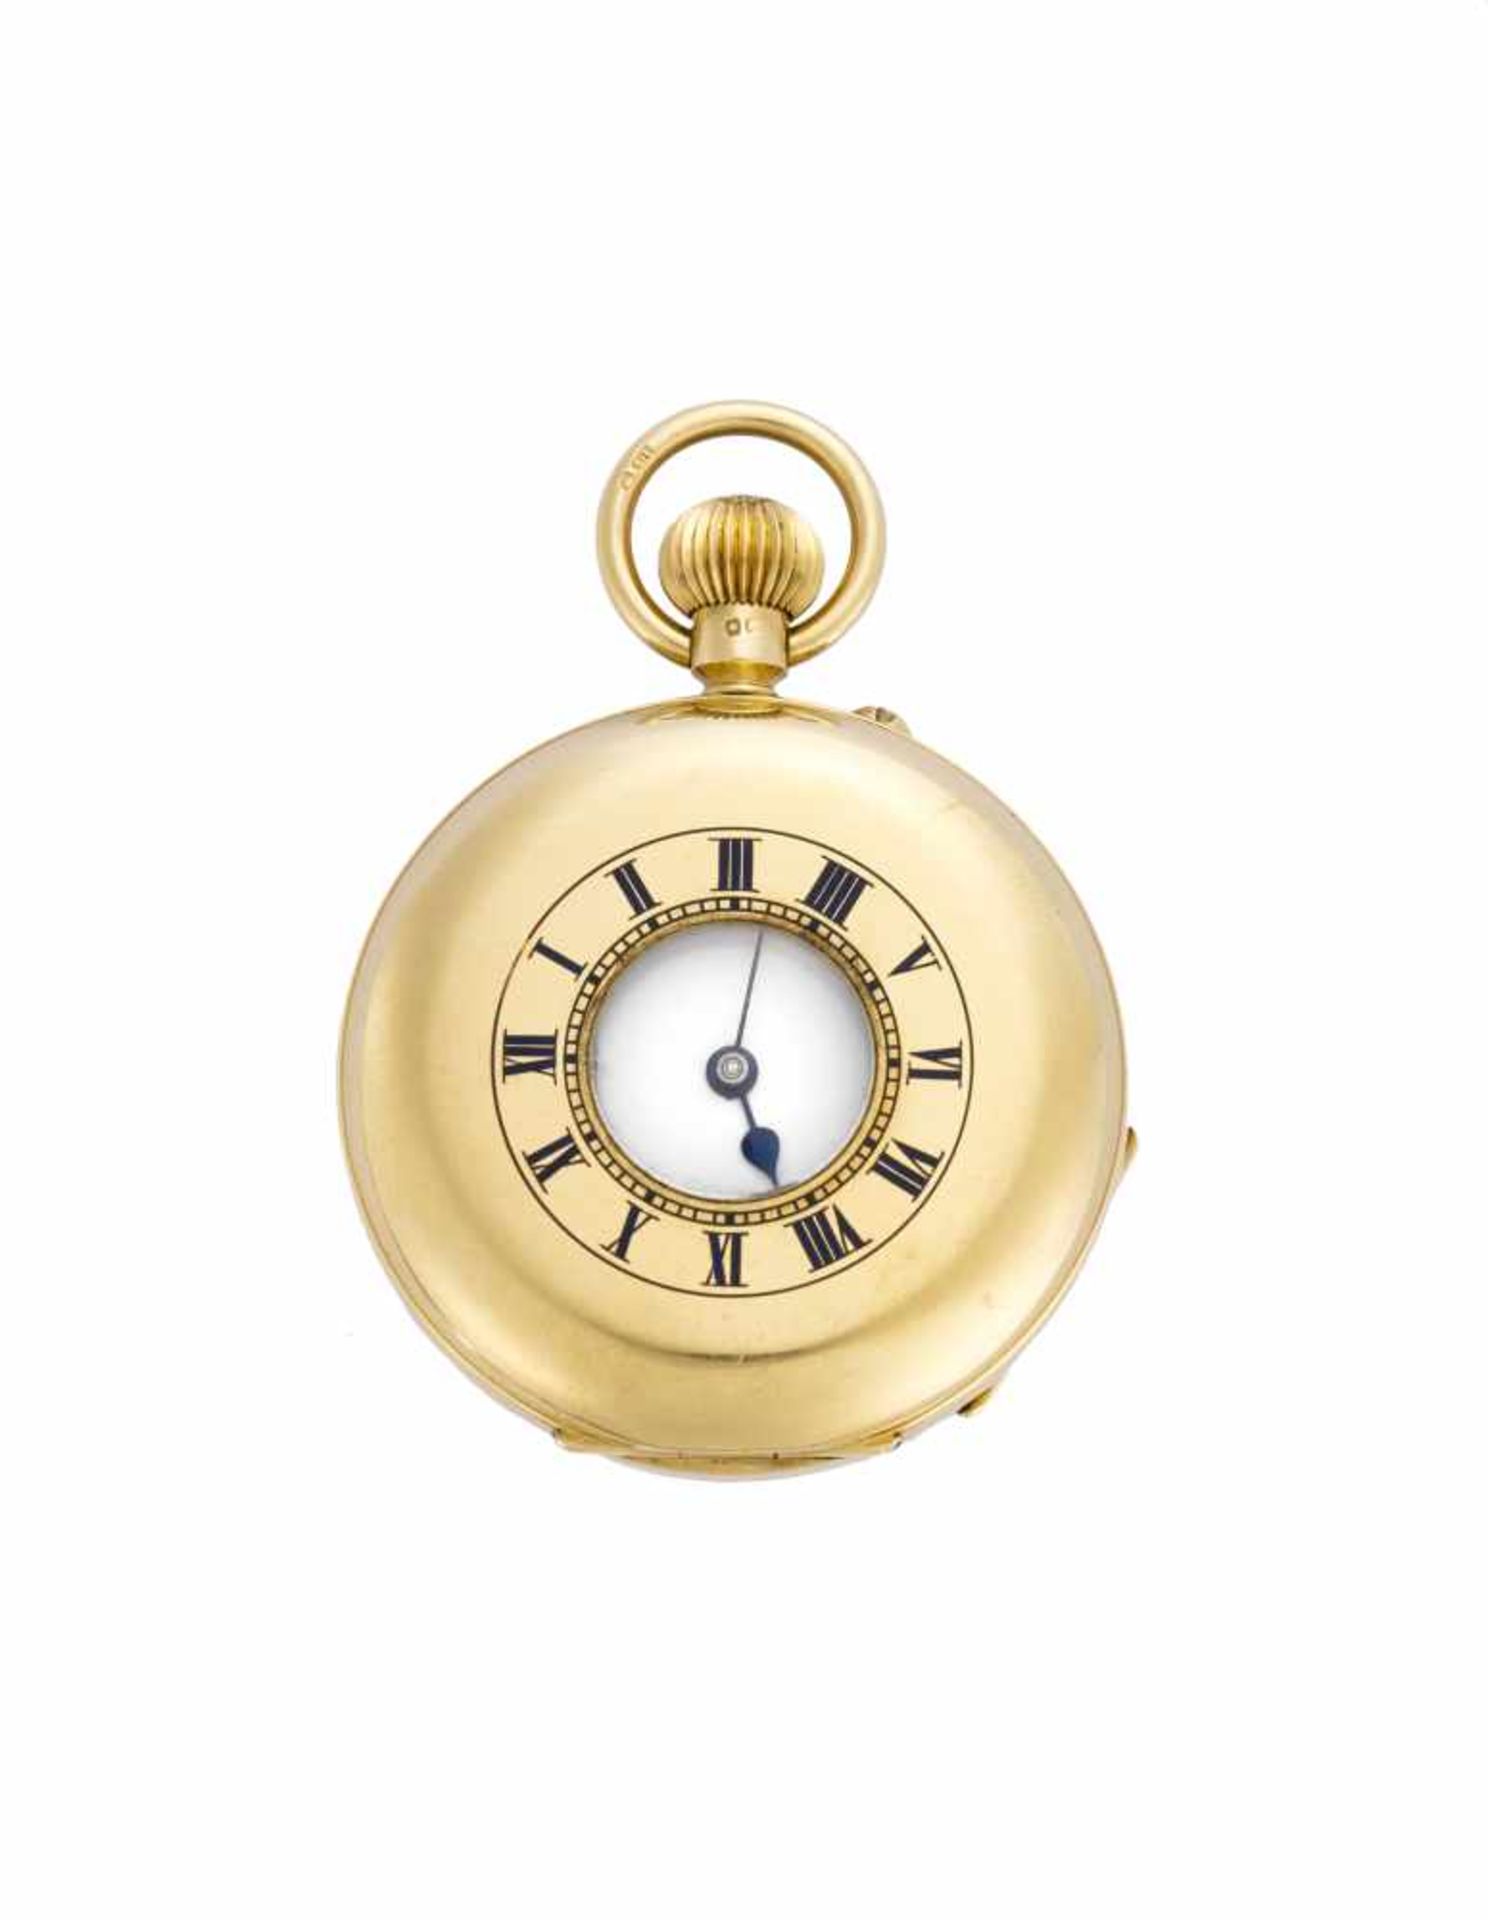 SIR JOHN BENNETT LTD, LONDON 18K gold demi-savonnette pocket watch19th centuryDial and movement